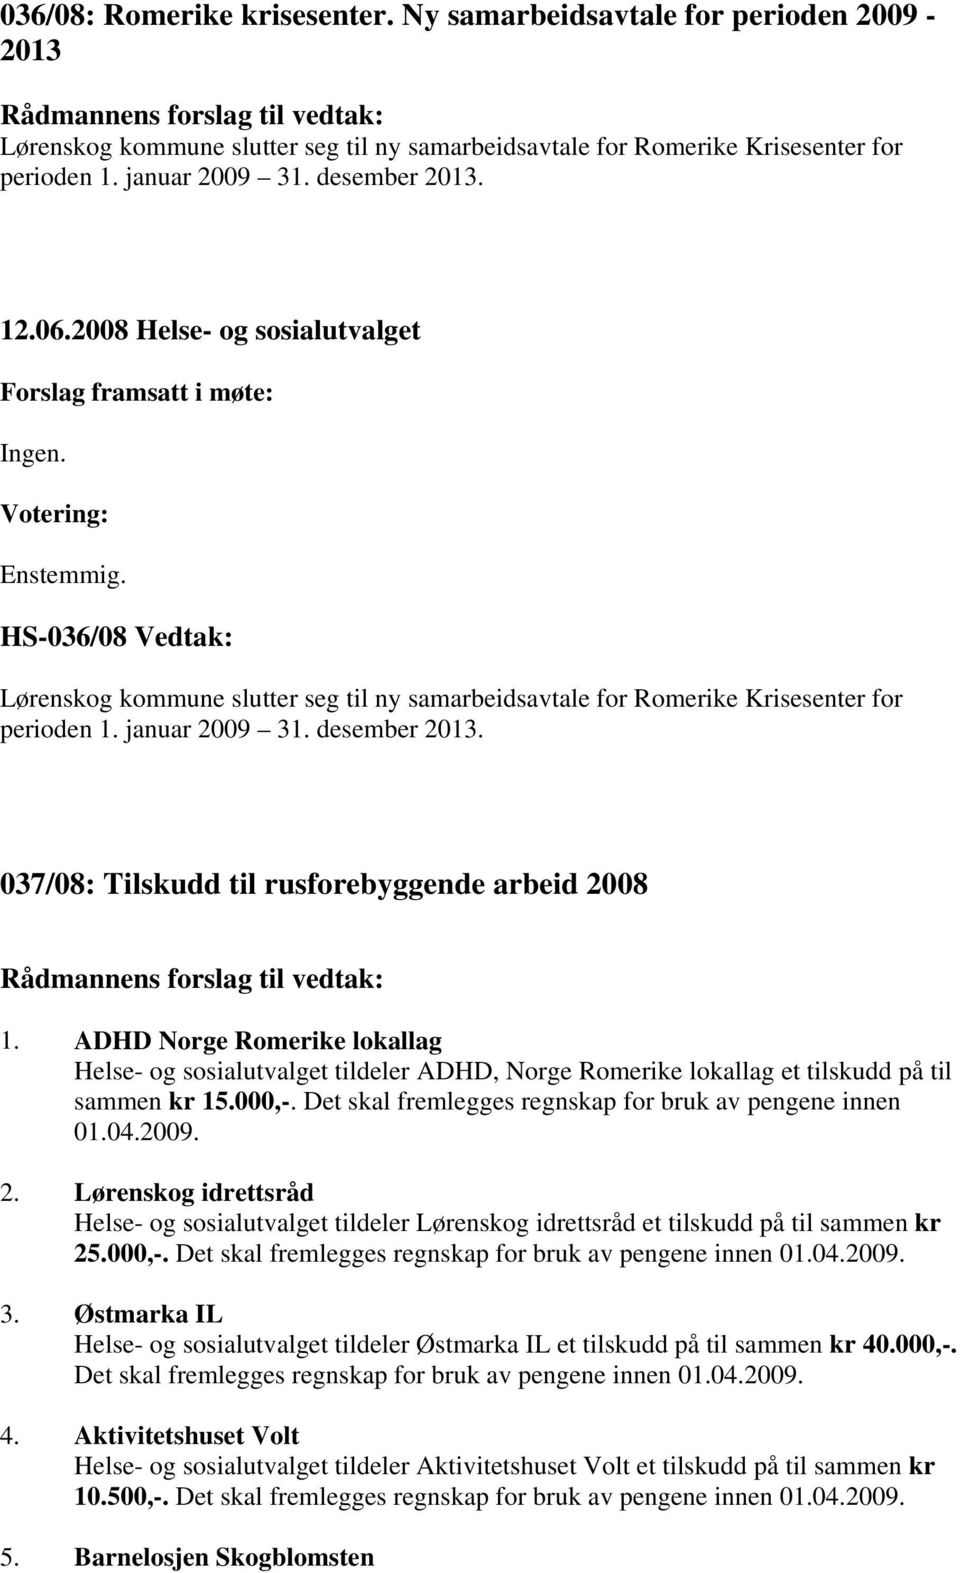 ADHD Norge Romerike lokallag Helse- og sosialutvalget tildeler ADHD, Norge Romerike lokallag et tilskudd på til sammen kr 15.000,-. Det skal fremlegges regnskap for bruk av pengene innen 01.04.2009.